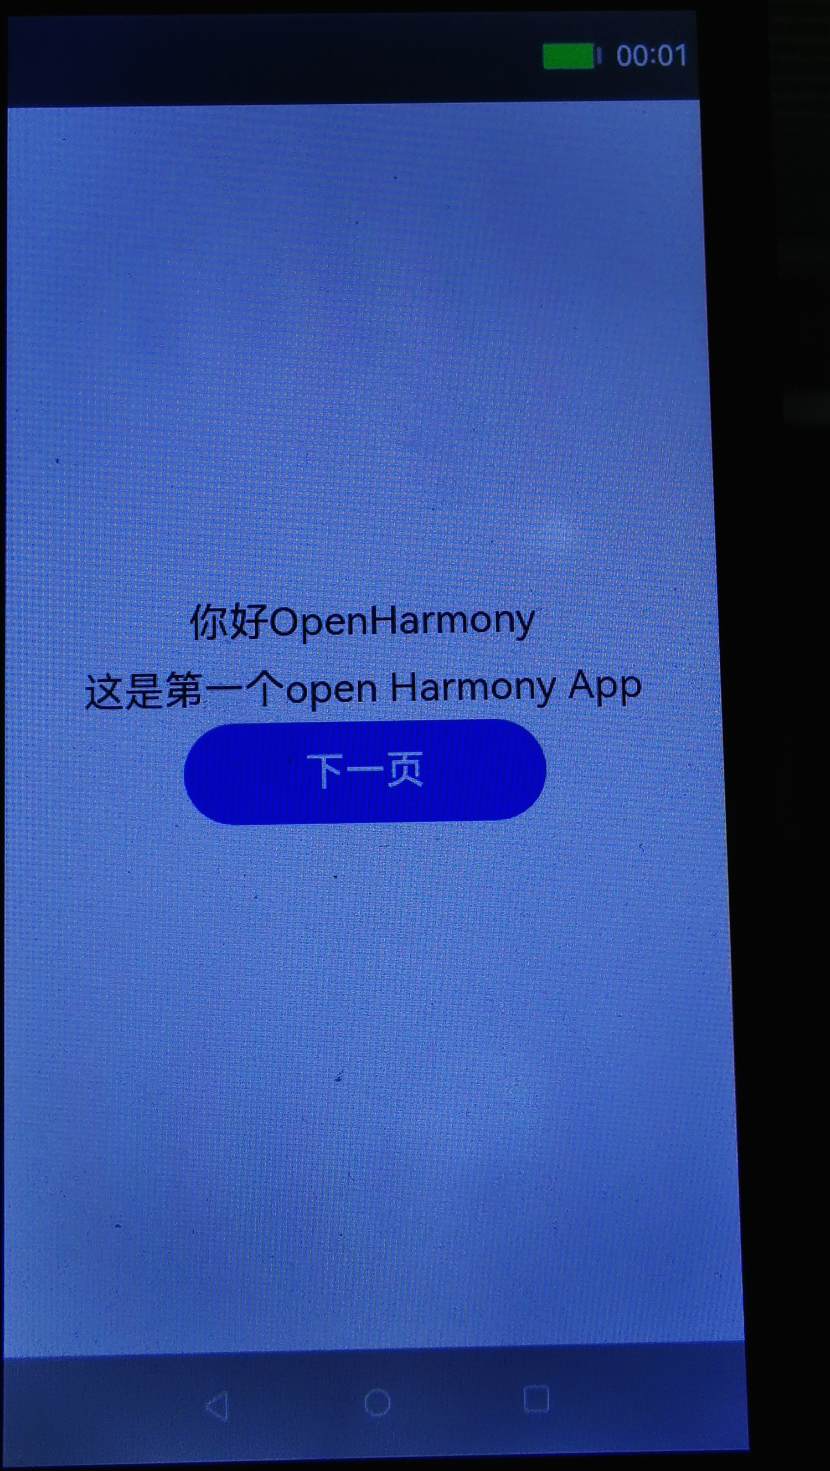 在OpenHarmony2.0 上安装自己的系统应用-开源基础软件社区